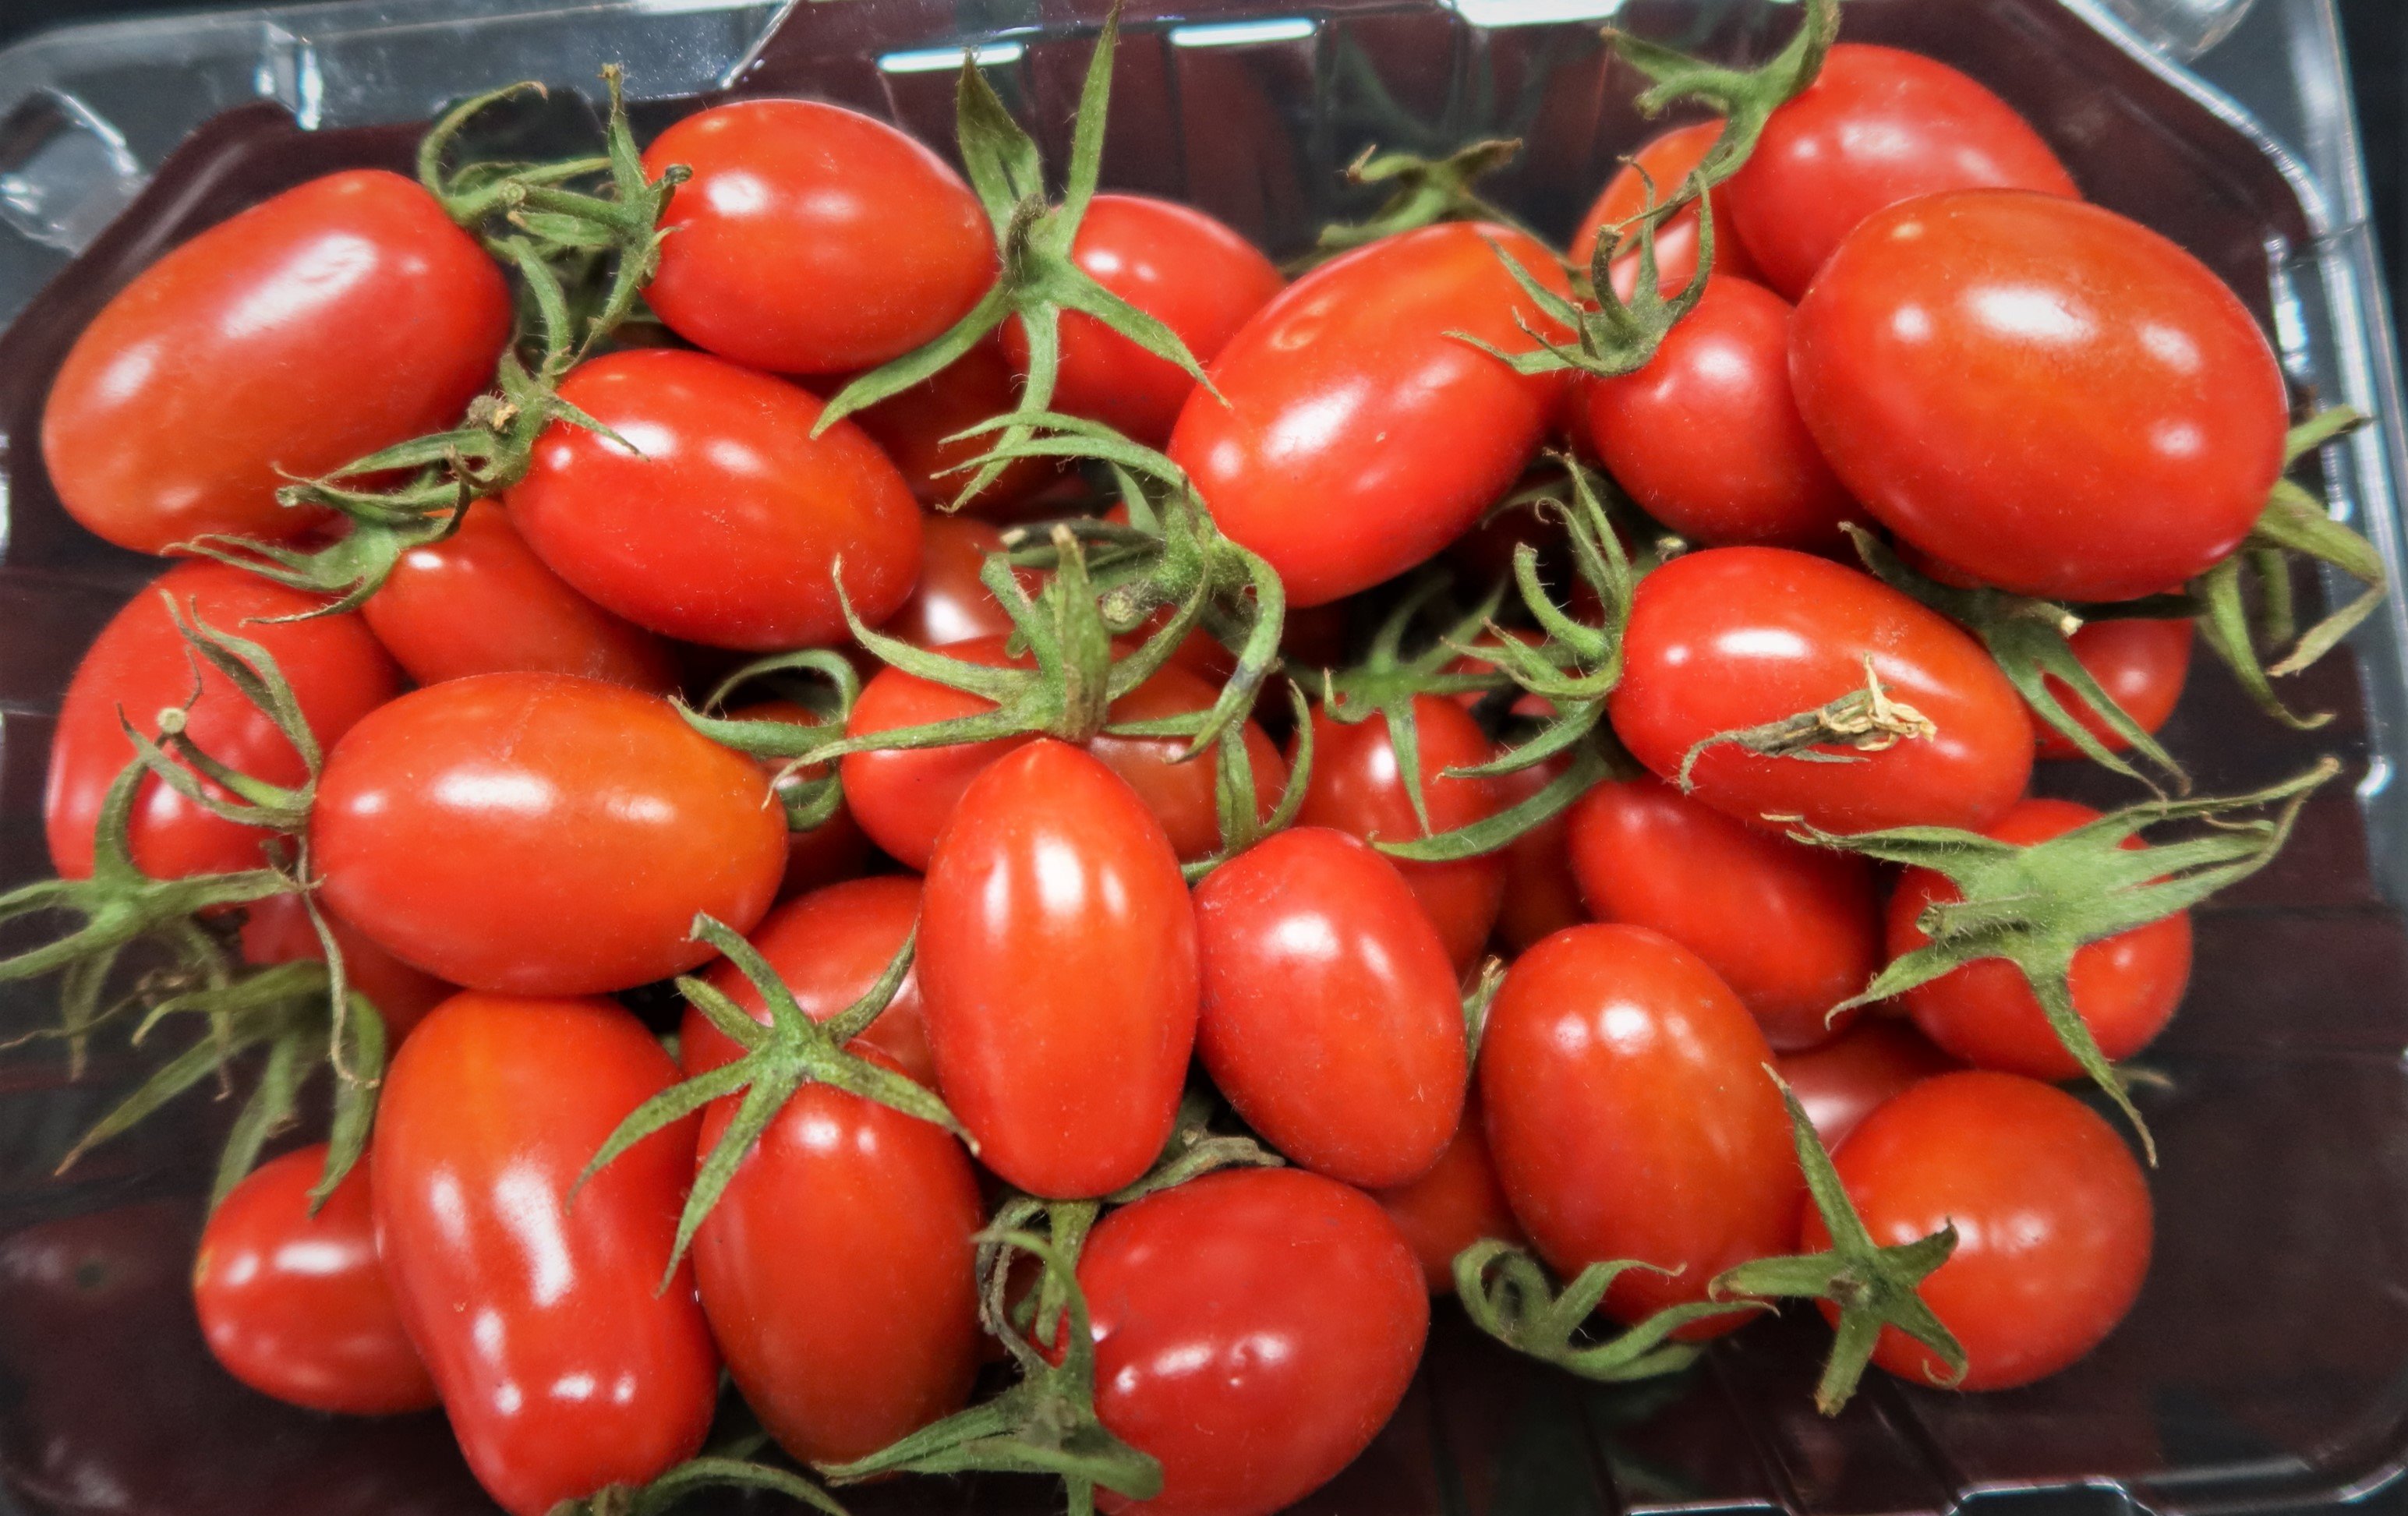 小果番茄整盒以塑膠袋包覆後放置冰箱2周後取出,果實外型飽滿,顏色亮麗